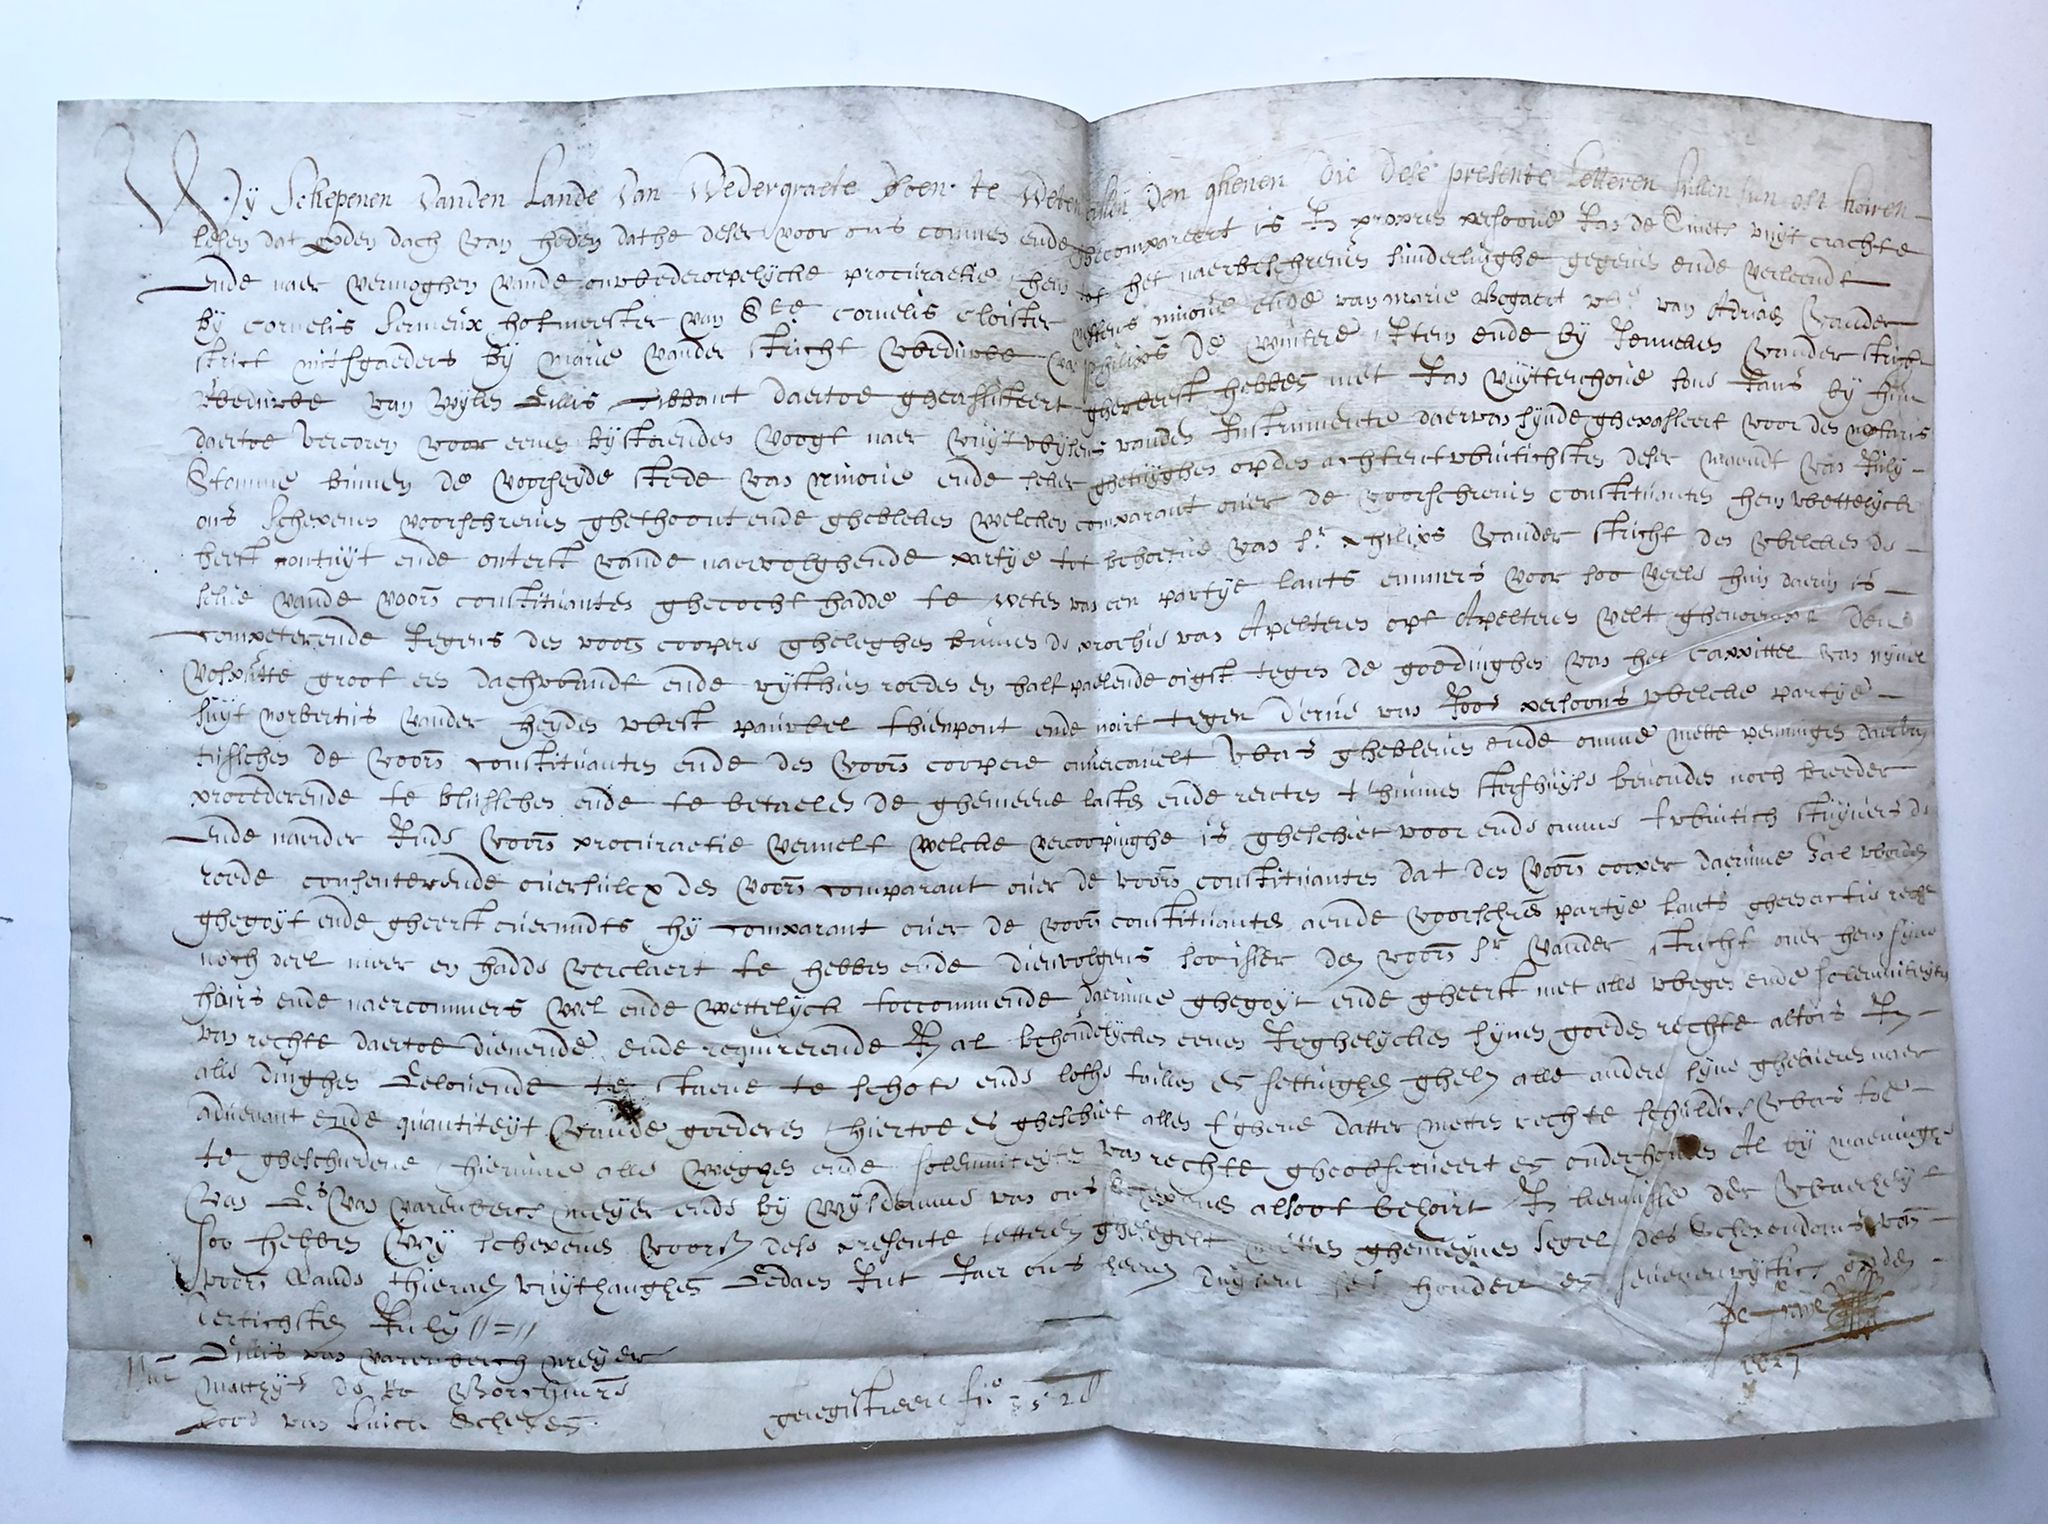  - [Charter on parchment, Belgium, 1657] Deed of transport (Acte van transport) d.d. 30-7-1657 voor schepenen van Wedergraete van een partij land binnen de prochie van Apelters op het Apeltersvelt. Manuscript, charter on parchment, seal lost, 8 pp.